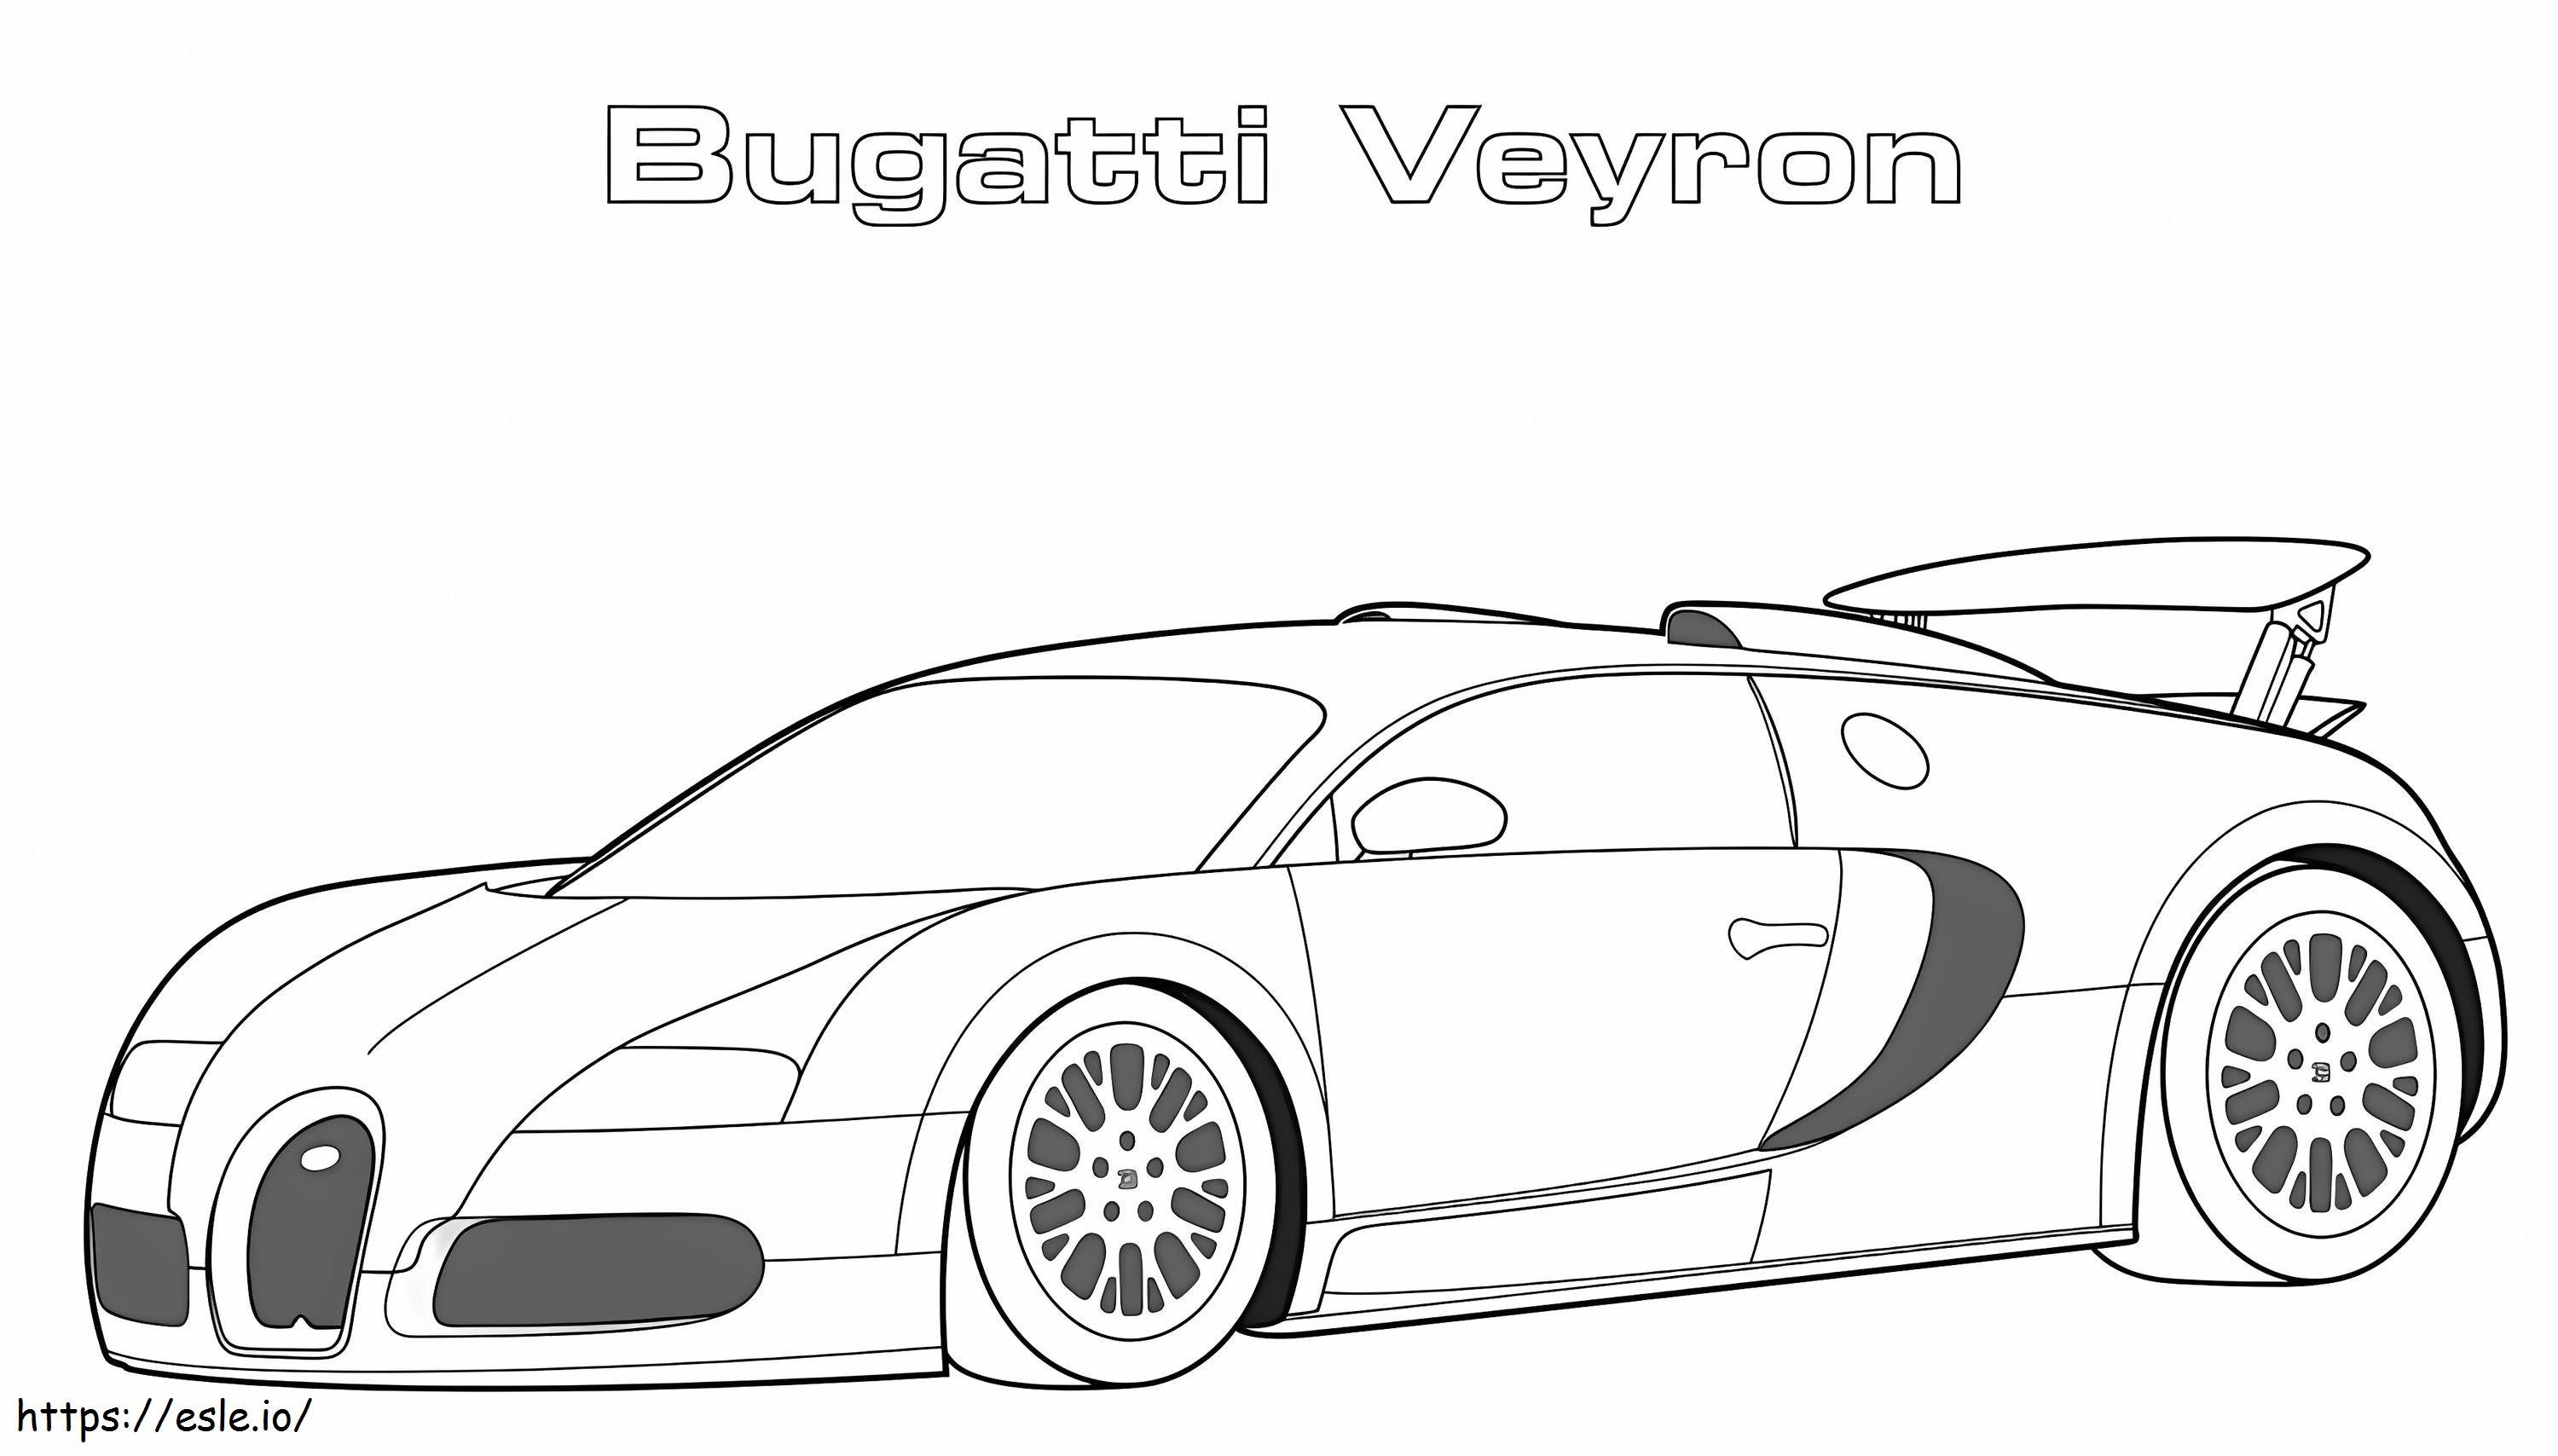 1560417741 Bugatti Veyron A4 da colorare